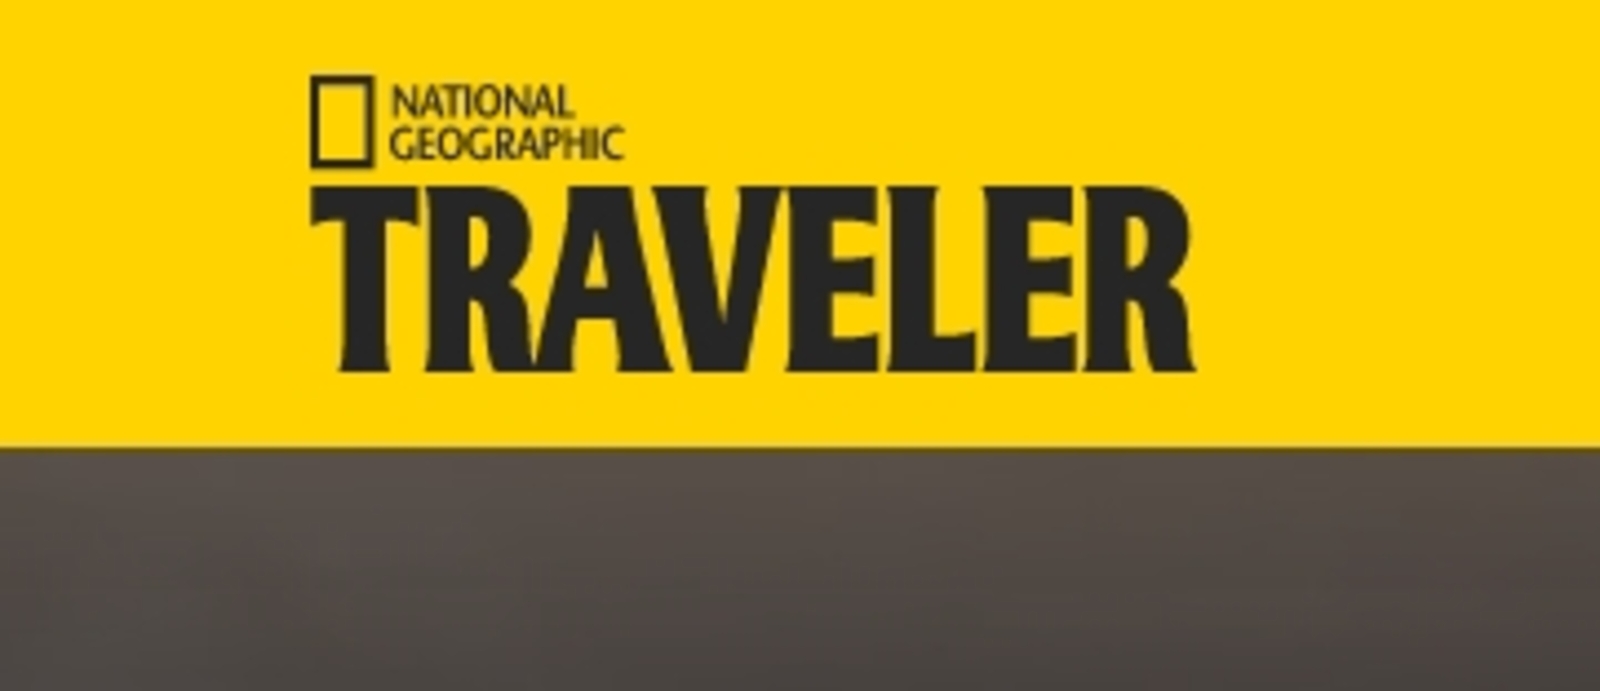 Башкирия принимает участие в проекте журнала National Geographic